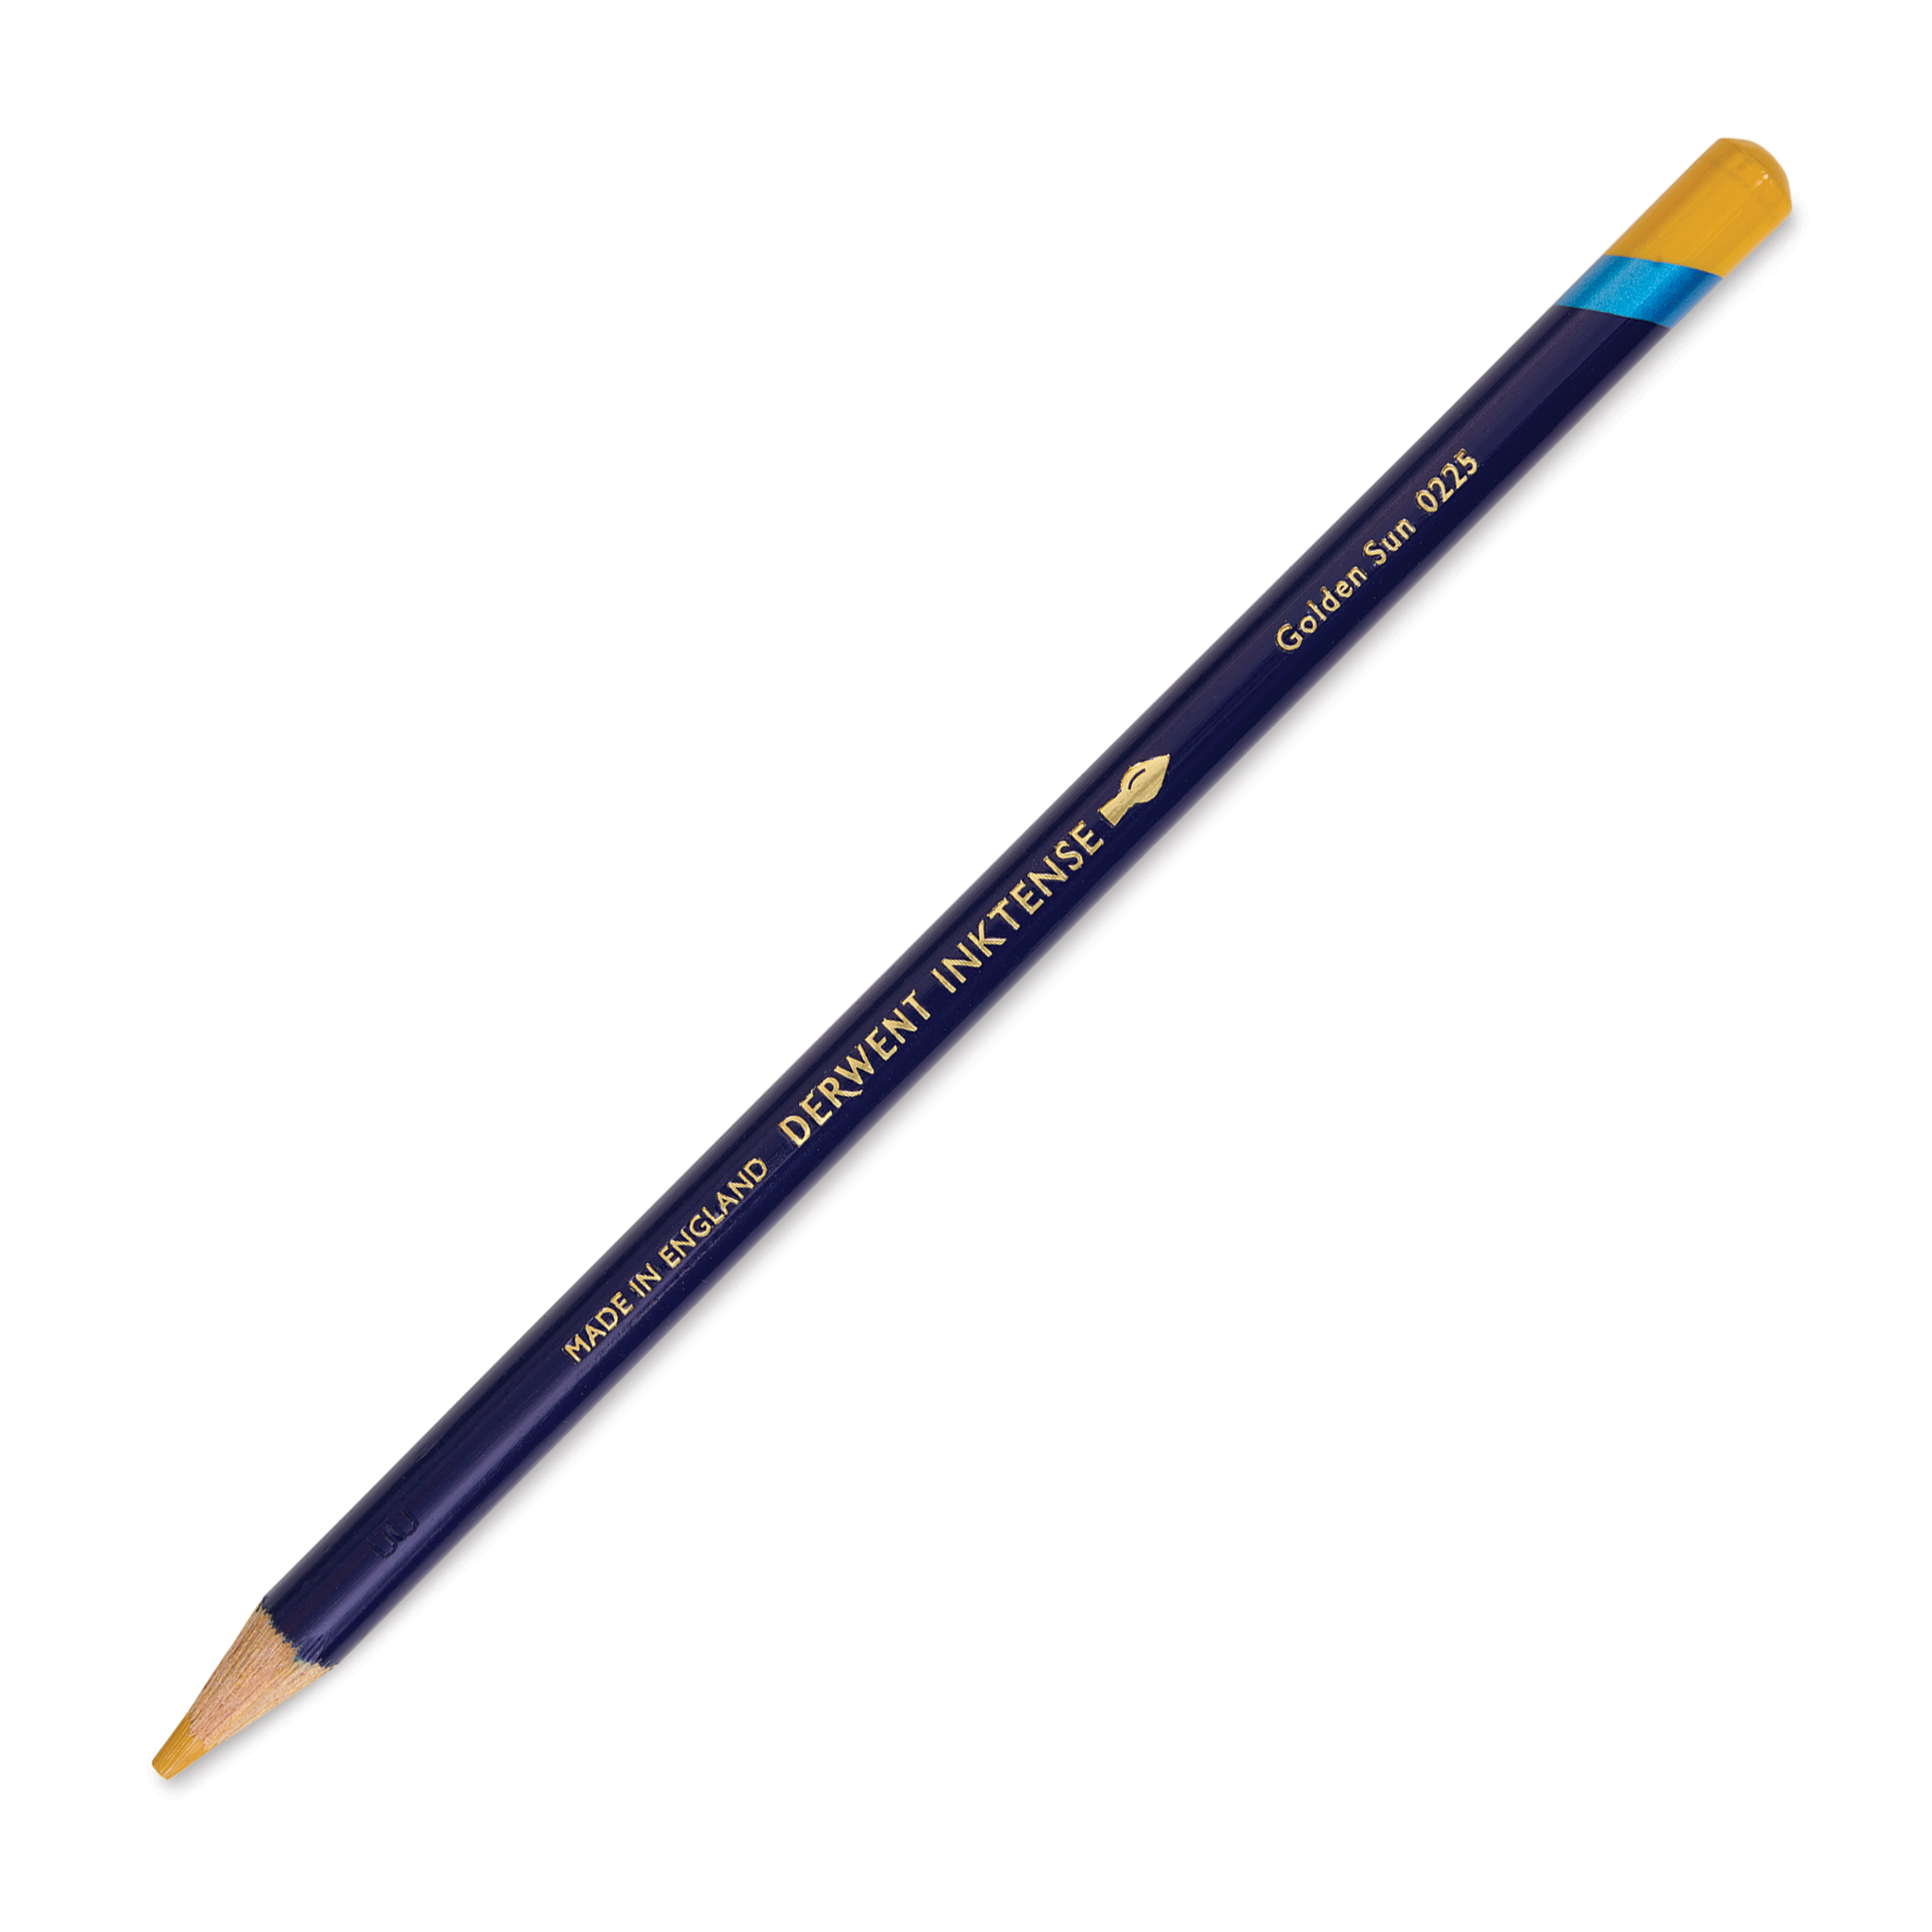 Derwent - Inktense Watersoluble Pencils Set Of 72 Tin Set